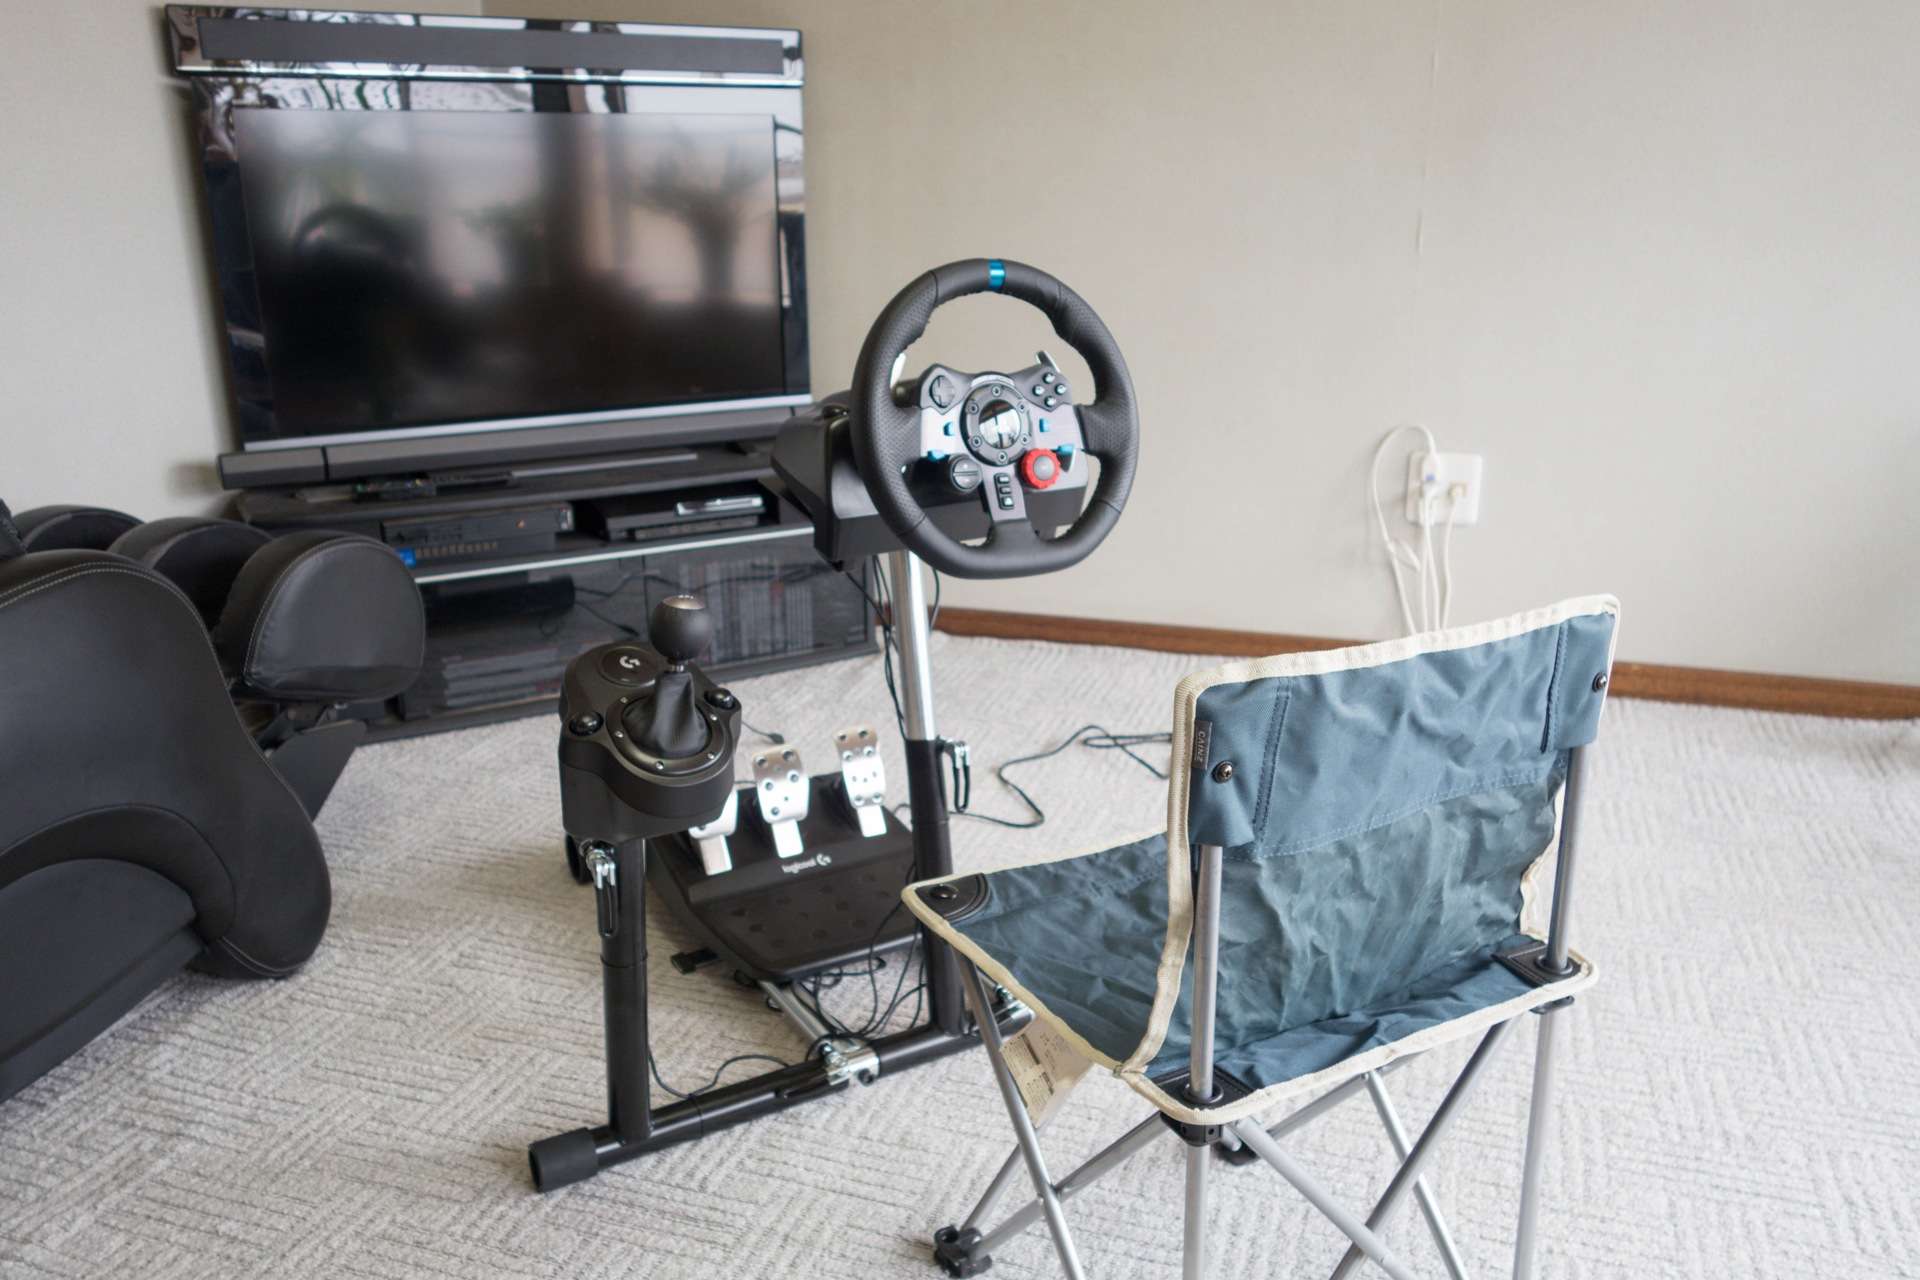 レースゲームを遊ぶときだけ設置して，快適なドライブ環境を実現するステアリングスタンド「Wheel Stand Pro」を紹介